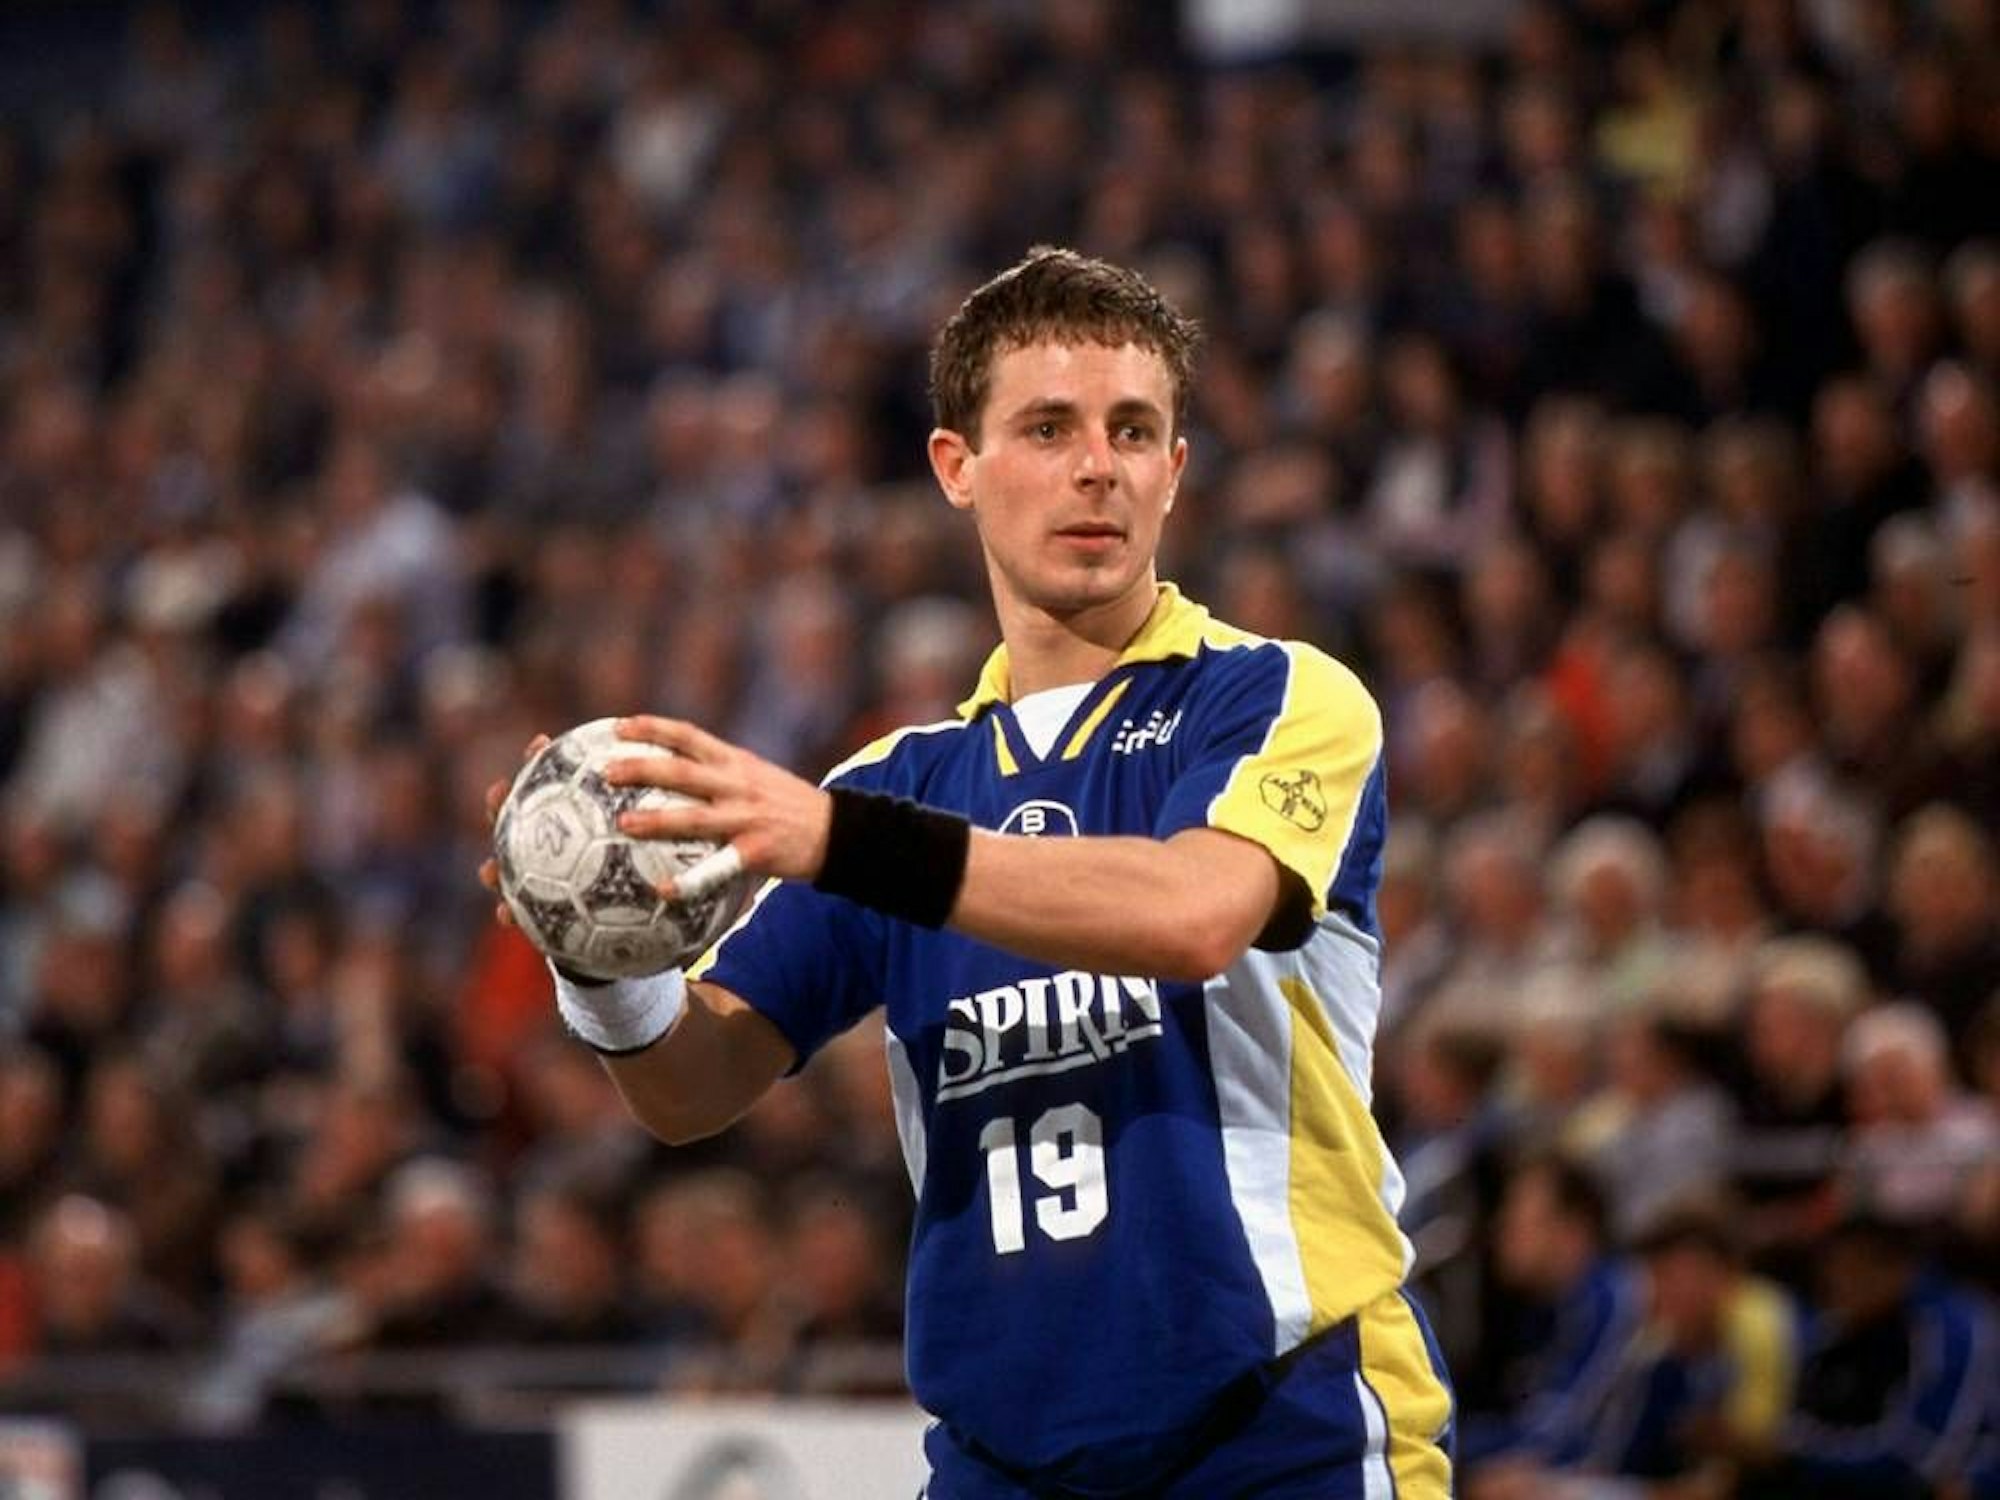 Ein junger Handballer hält den Ball im Stand bereit zum Wurf. Er trägt ein gelb-blaues Trikot mit Aspirin als Hauptsponsor.